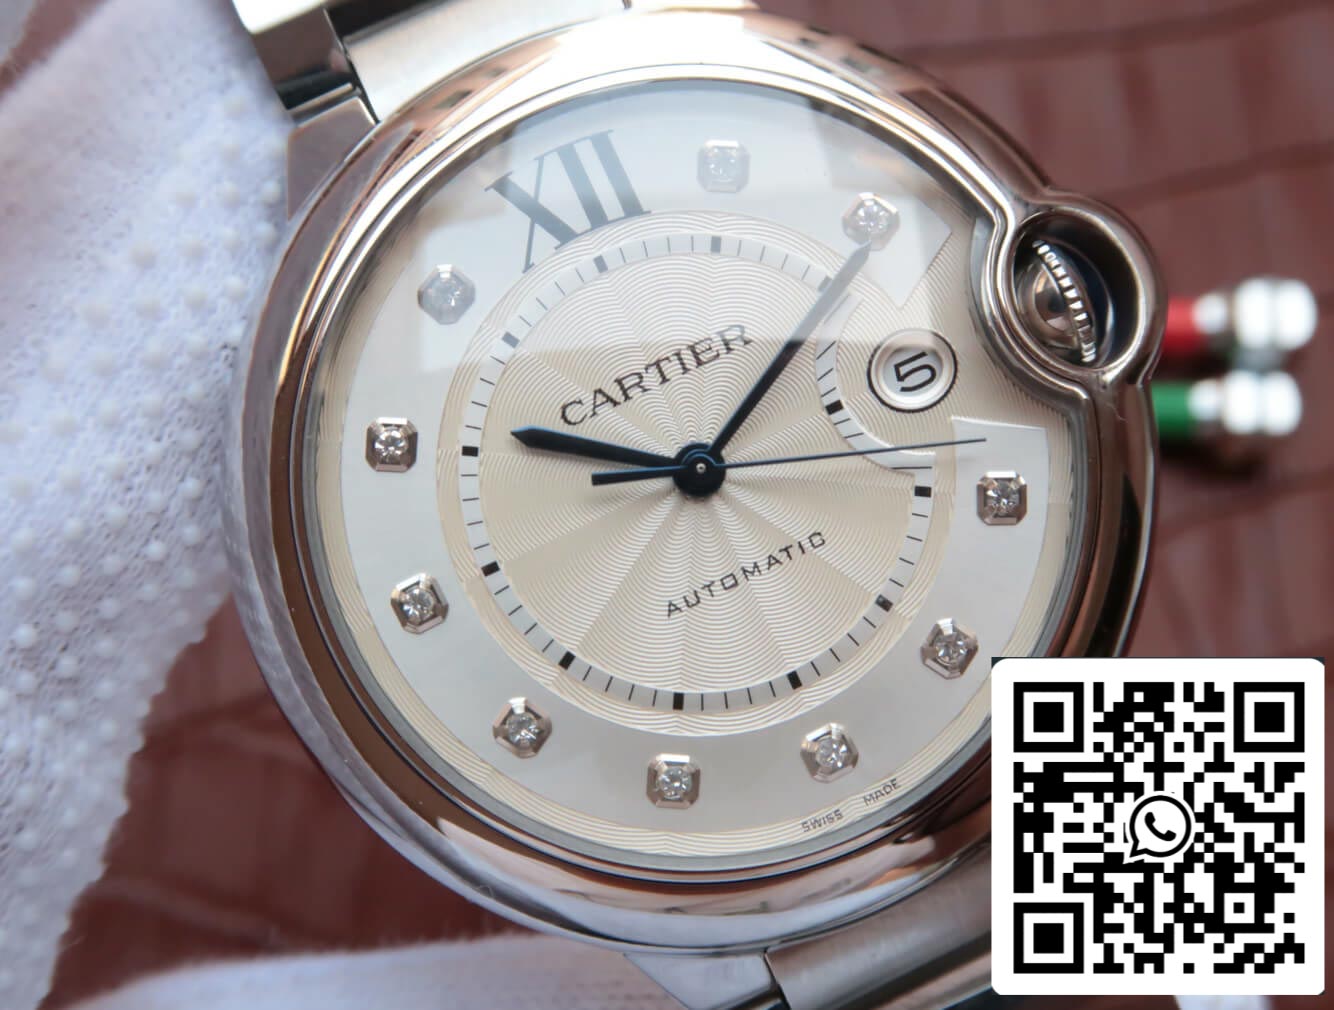 Ballon Bleu De Cartier WE902075 1:1 Best Edition JF Factory Silver Dial US Replica Watch